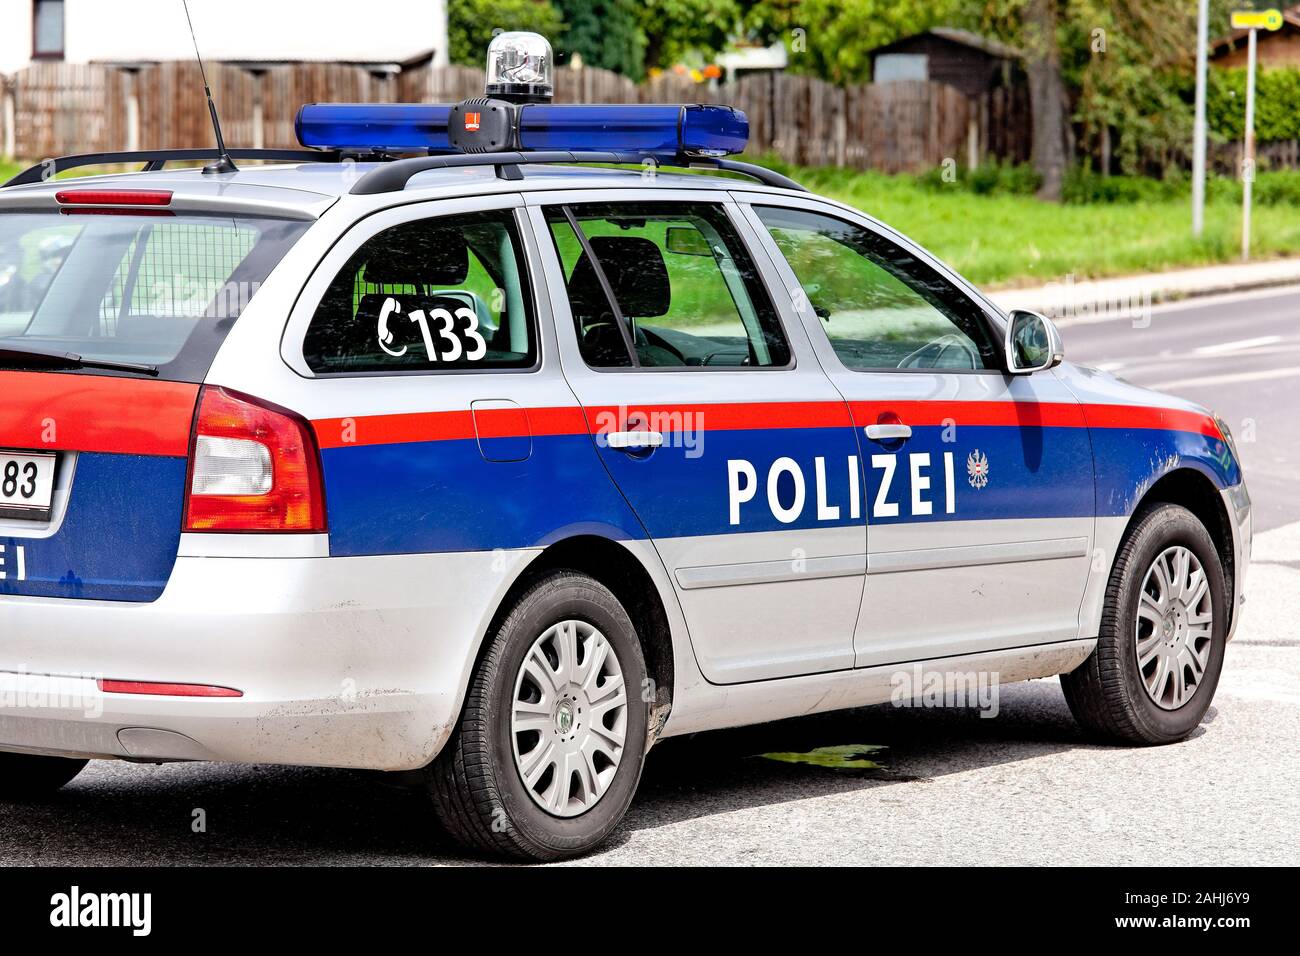 Österreichisches Polizeiauto, PKW, Einsatzfahrzeug, Polizei, Foto de stock